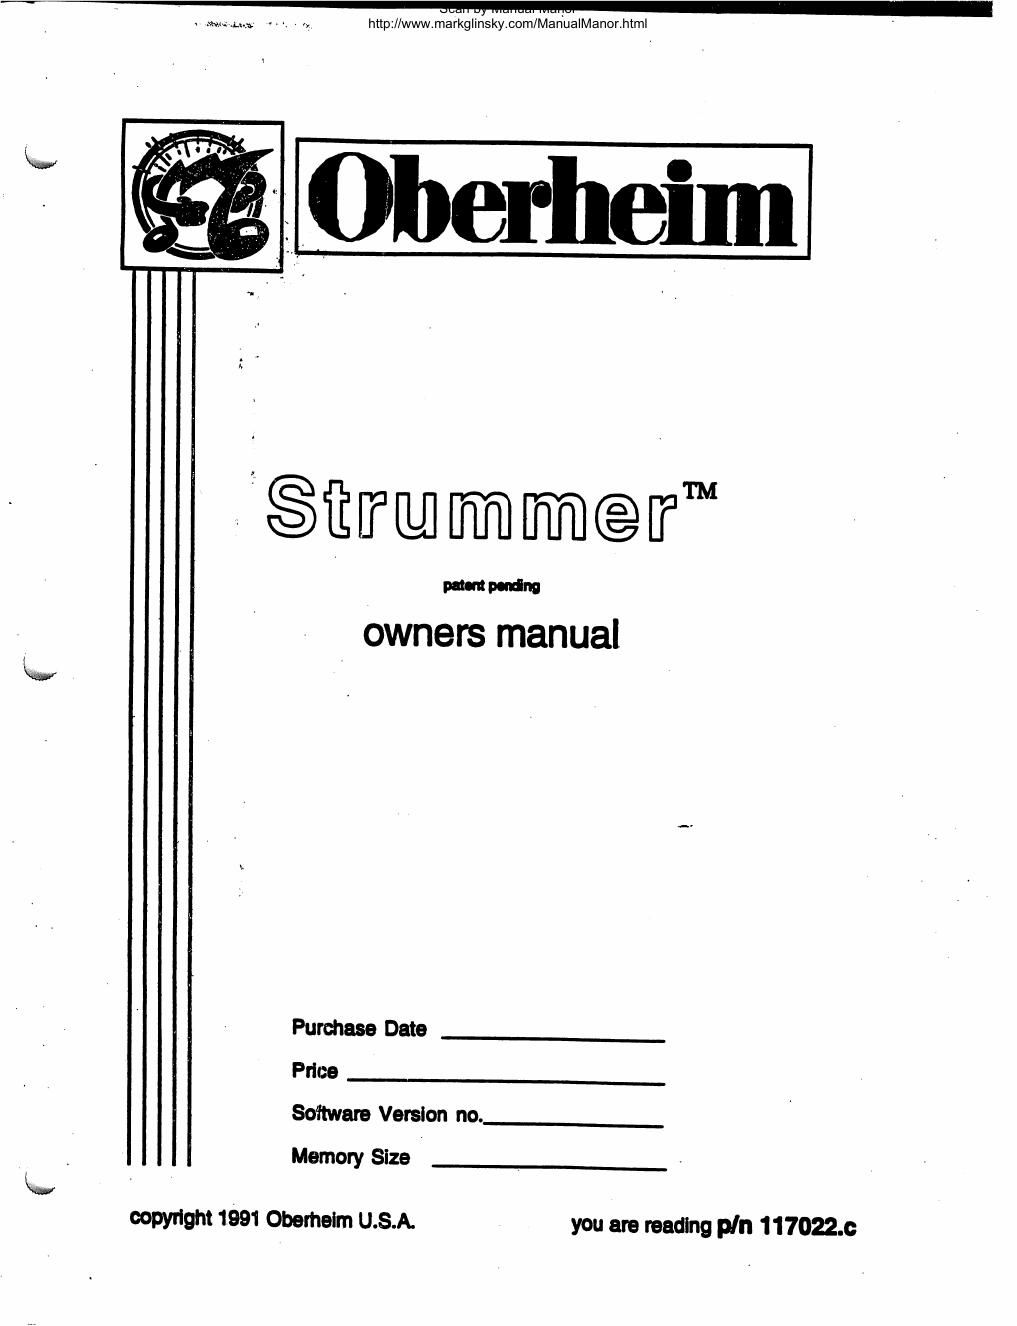 oberheim strummer user manual